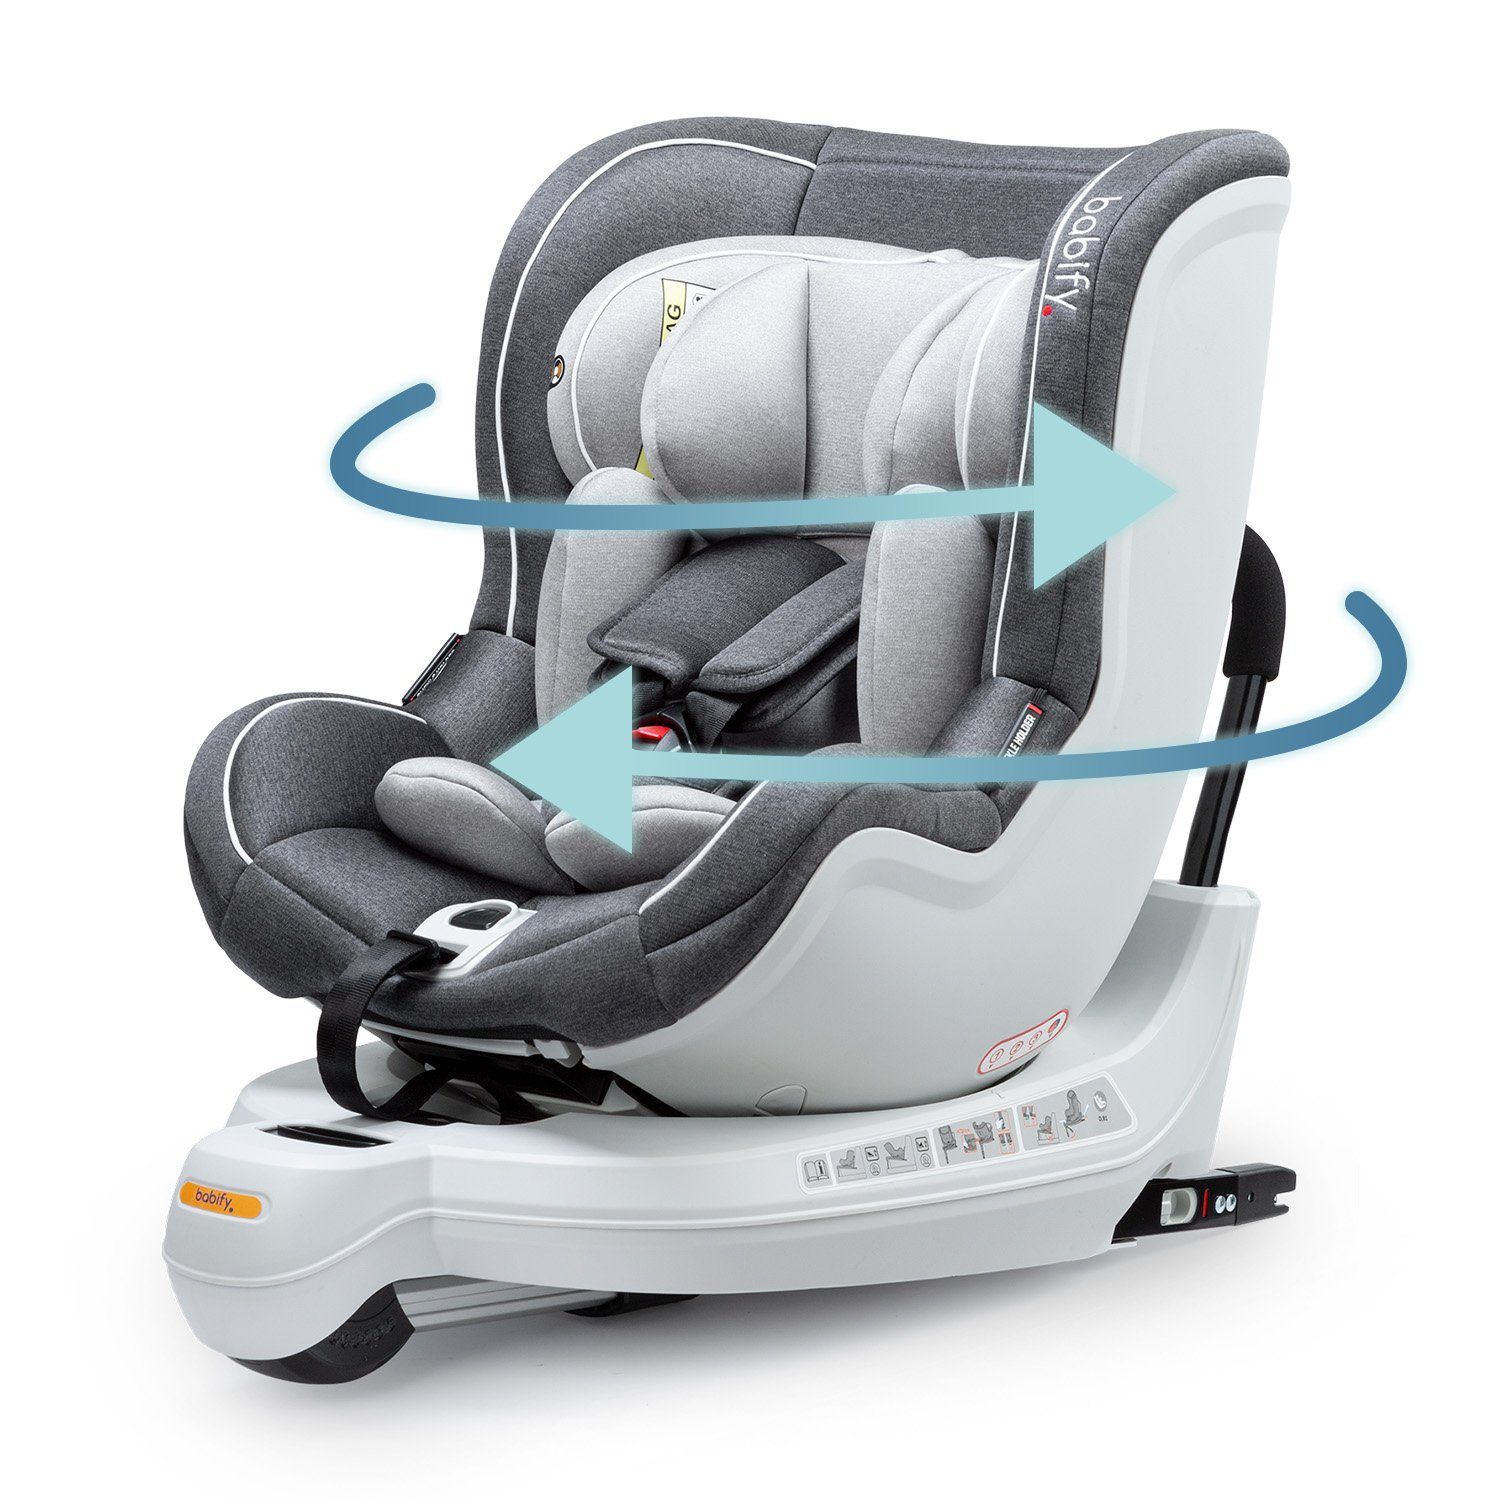 Autokindersitz - Für die Sicherheit unserer Kinder - Babybauch an Bord